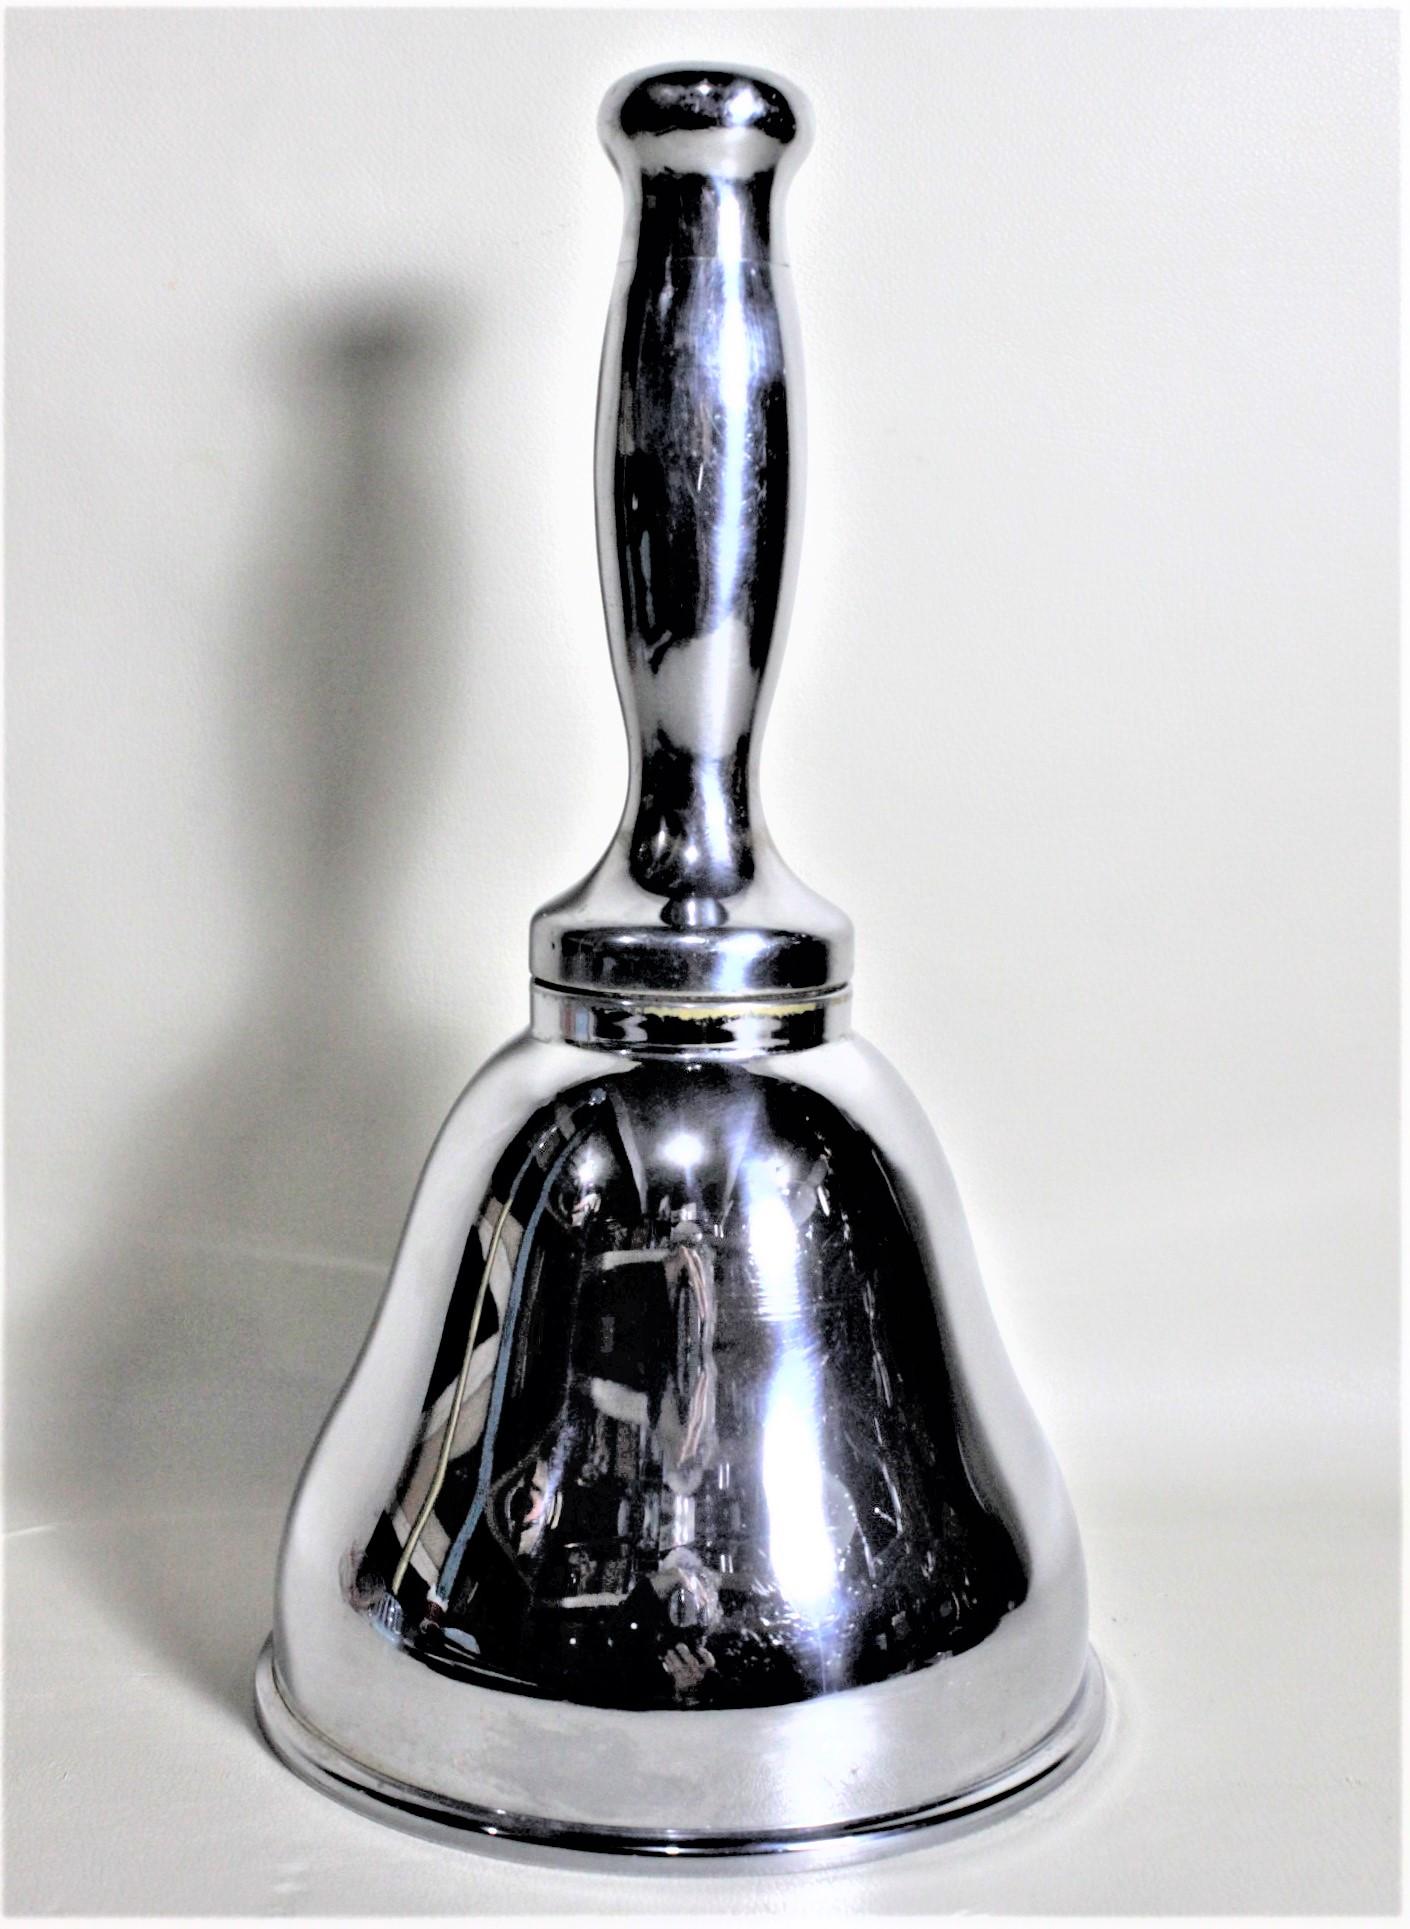 Ce shaker en métal argenté n'est pas signé, mais on suppose qu'il a été fabriqué en Angleterre vers 1935 dans le style Art déco de l'époque. La forme du shaker est comparable à celle d'une cloche d'école ou d'un crieur public. Le shaker est assez